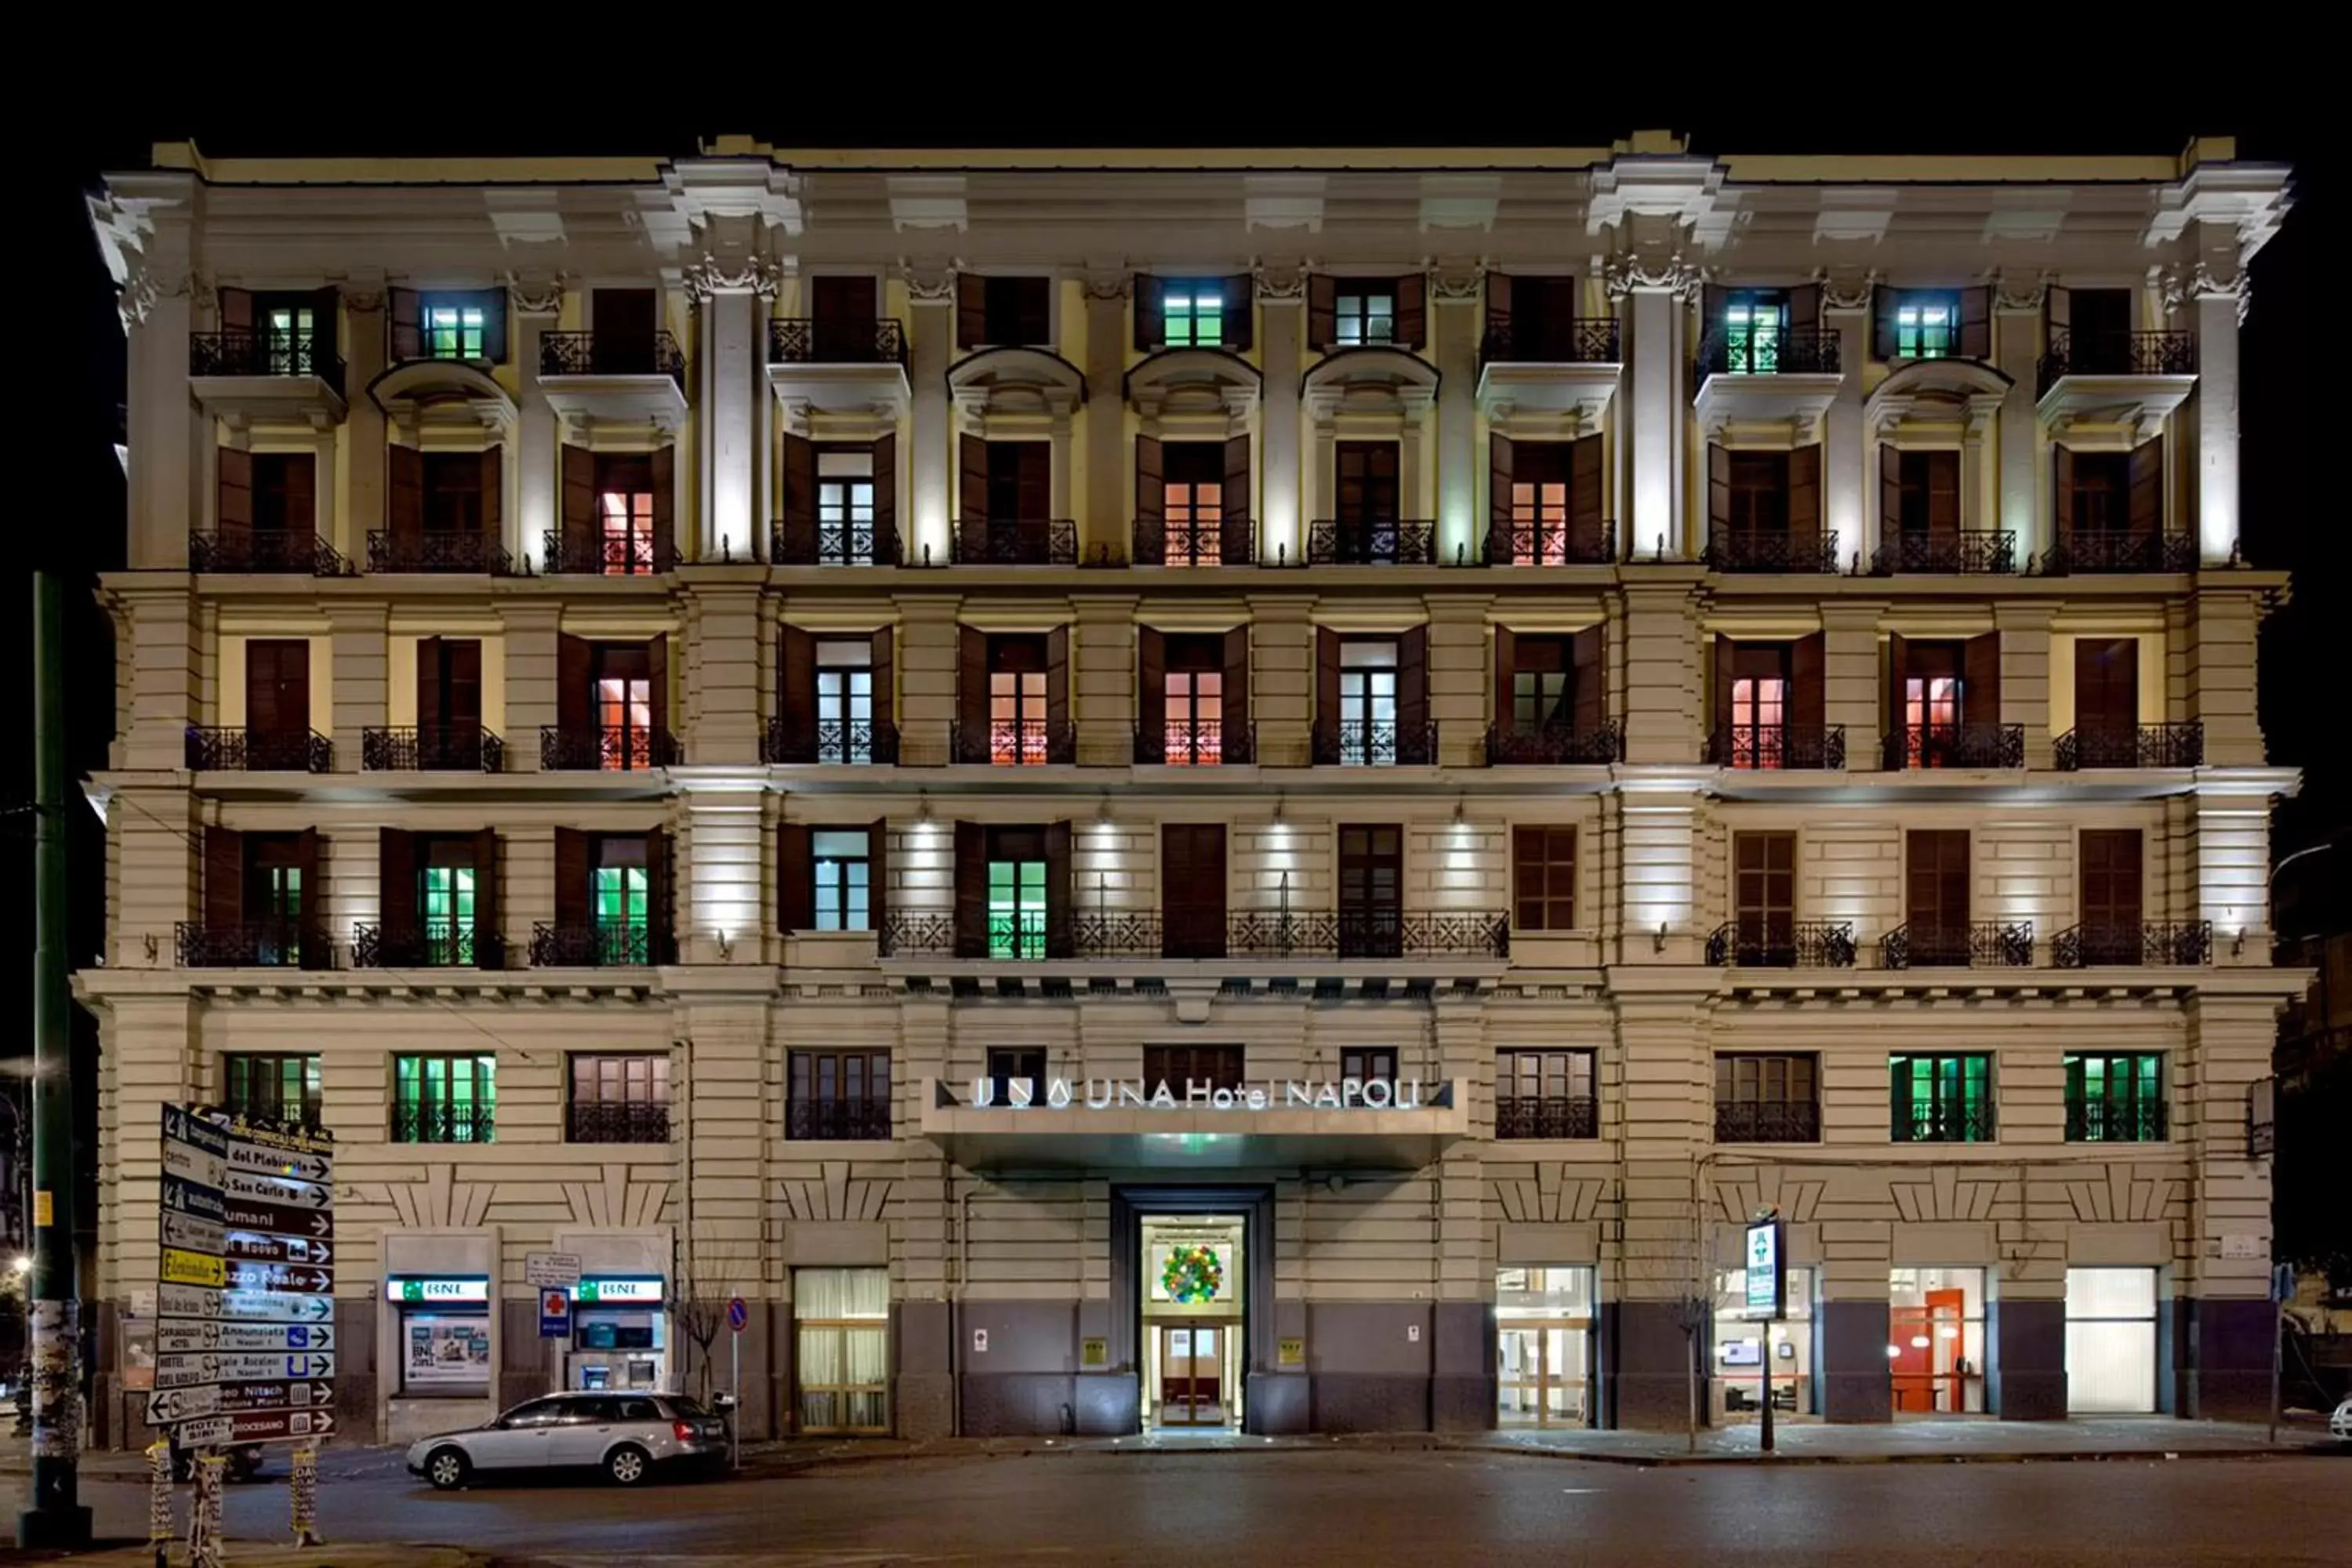 Facade/entrance, Property Building in UNAHOTELS Napoli